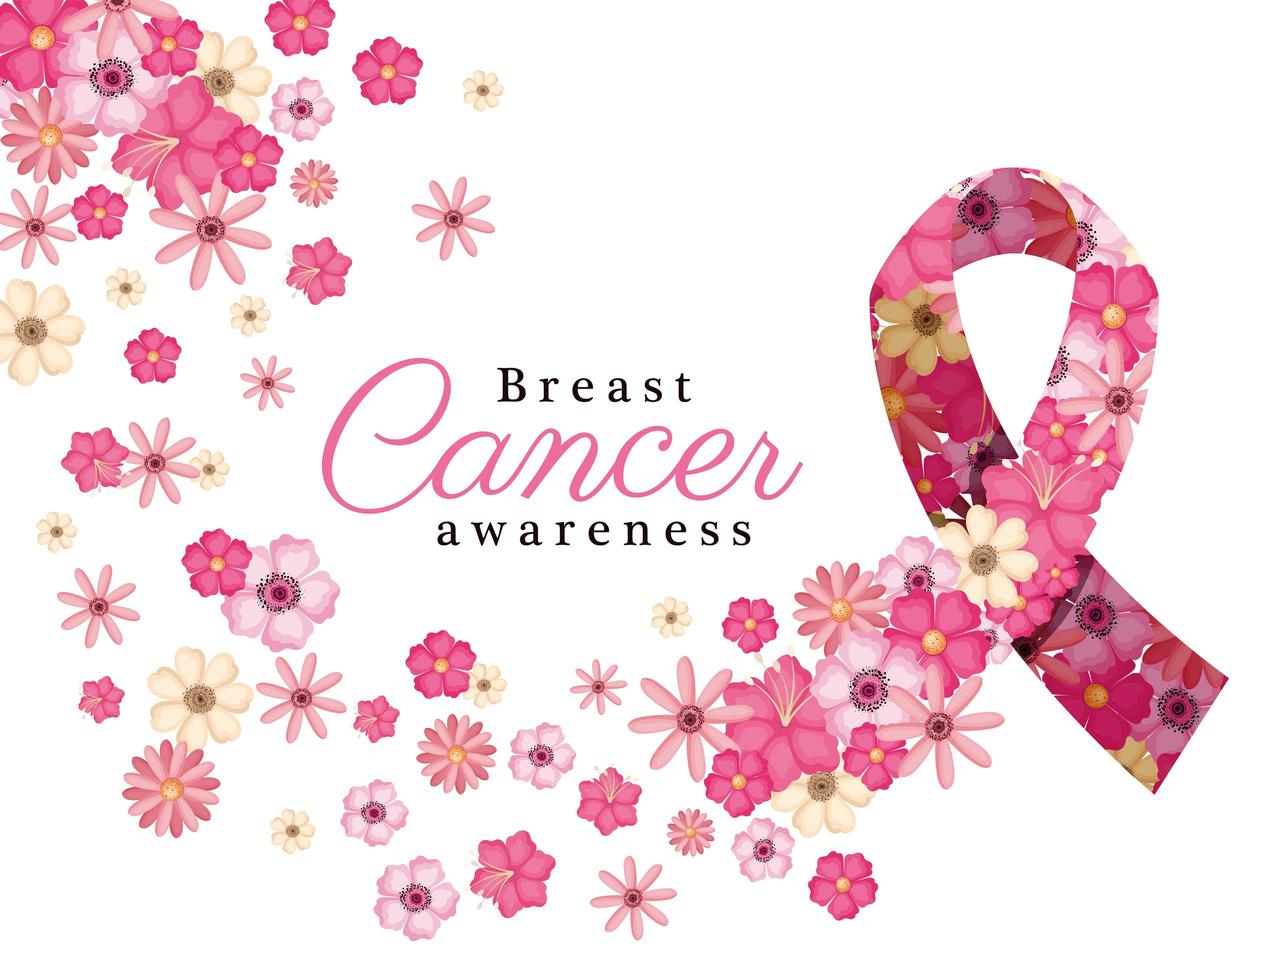 fiori rosa in nastro per il disegno vettoriale di consapevolezza del cancro al seno